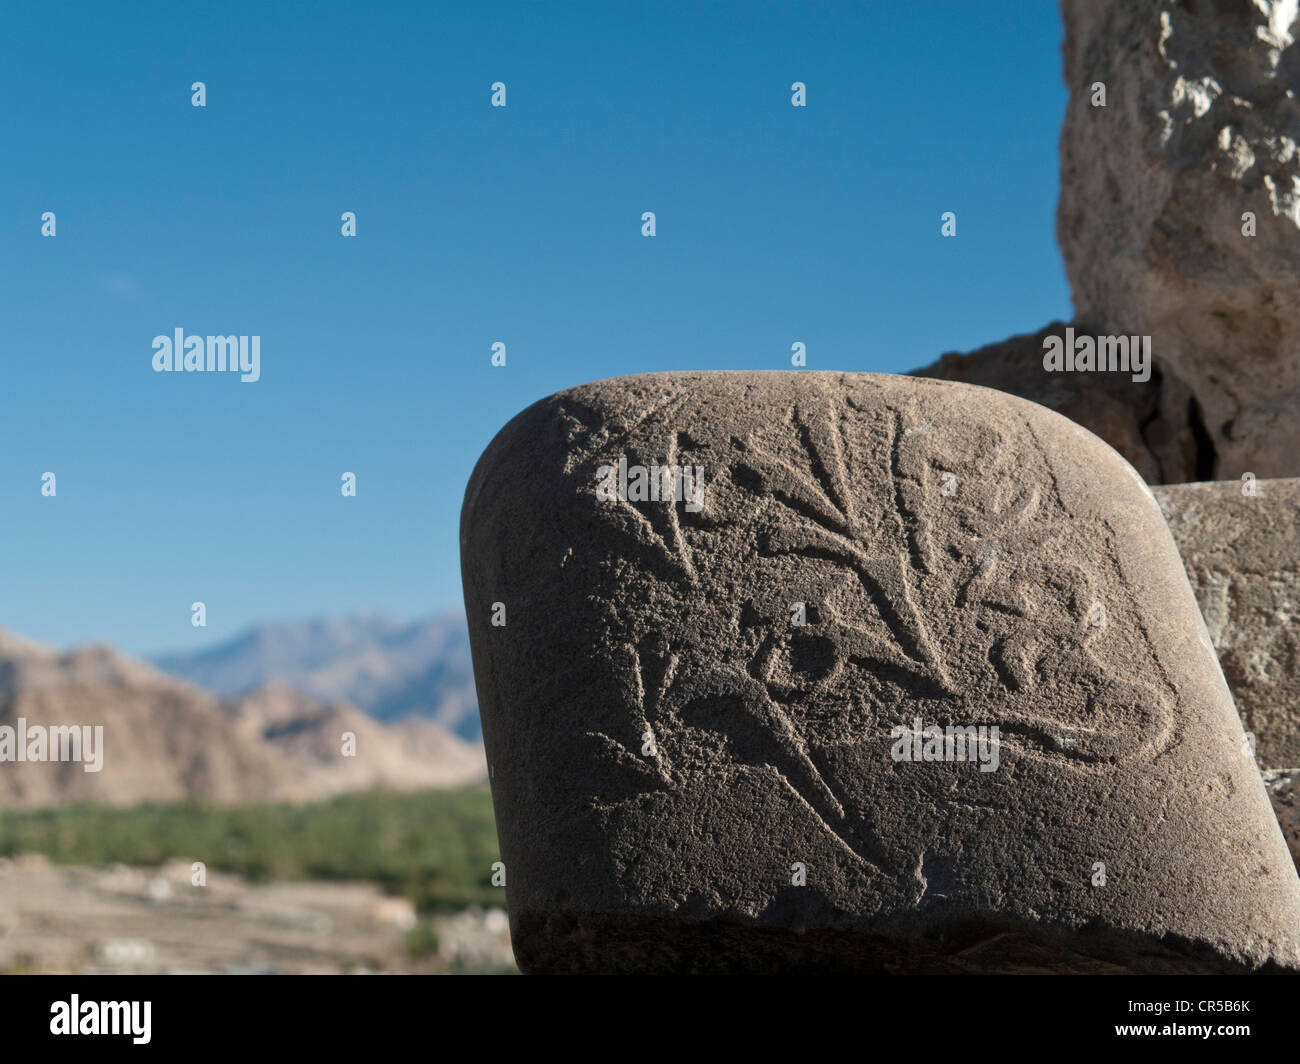 Mani di pietra con scolpito un simbolo religioso, trovata nei pressi di Thiksey Gompa, Thiksey, Jammu e Kashmir, India, Asia Foto Stock